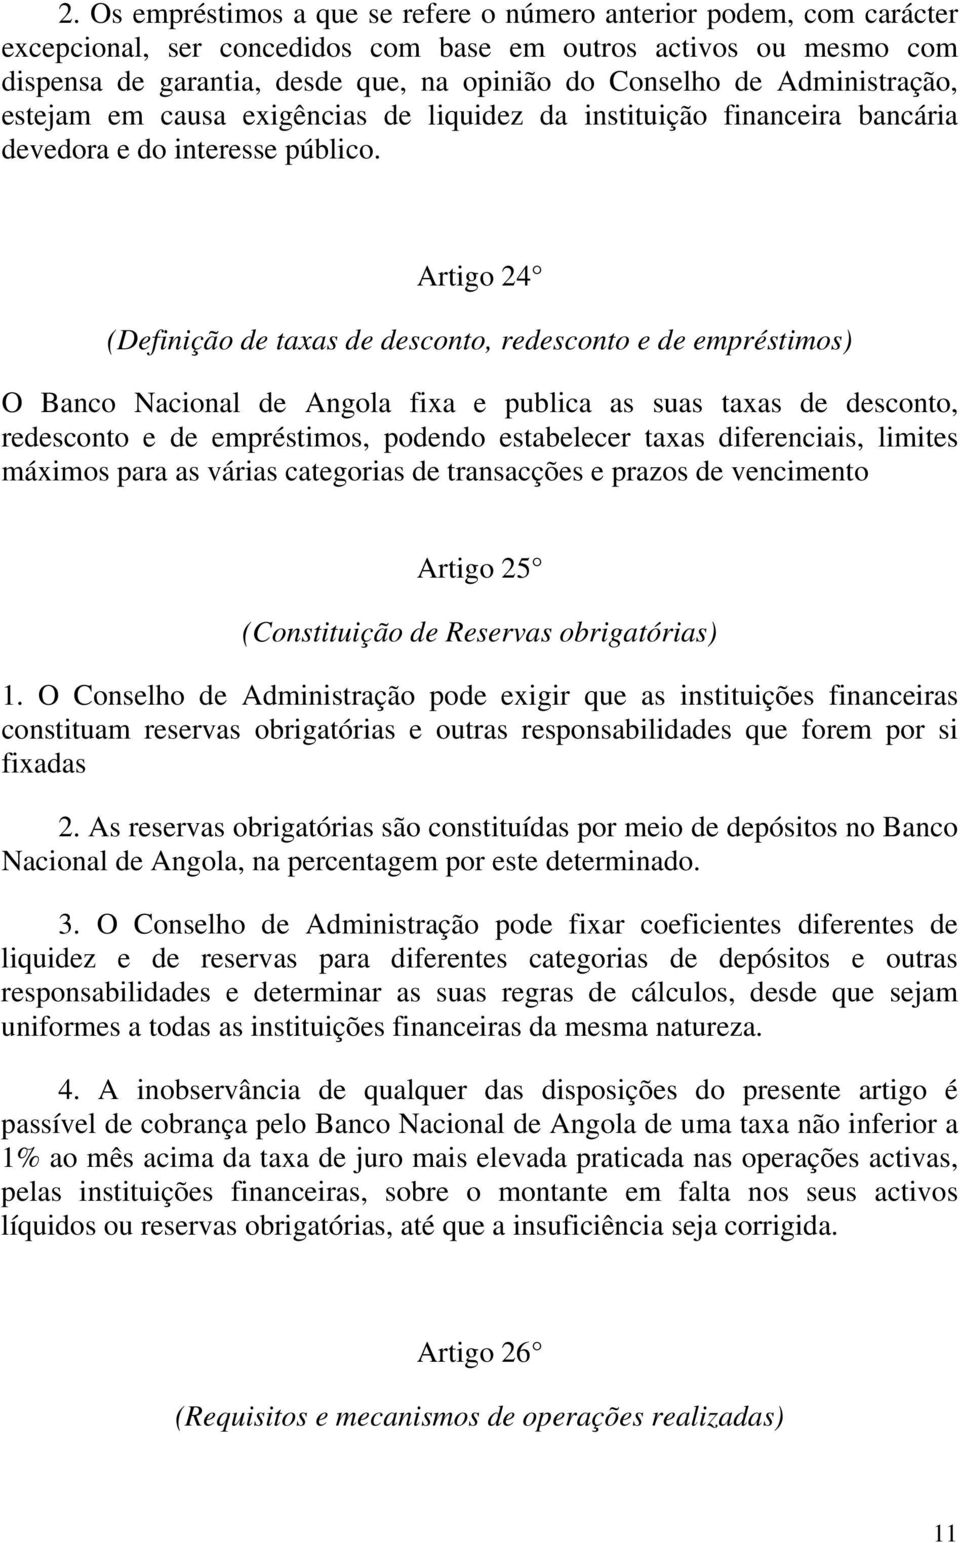 Artigo 24 (Definição de taxas de desconto, redesconto e de empréstimos) O Banco Nacional de Angola fixa e publica as suas taxas de desconto, redesconto e de empréstimos, podendo estabelecer taxas